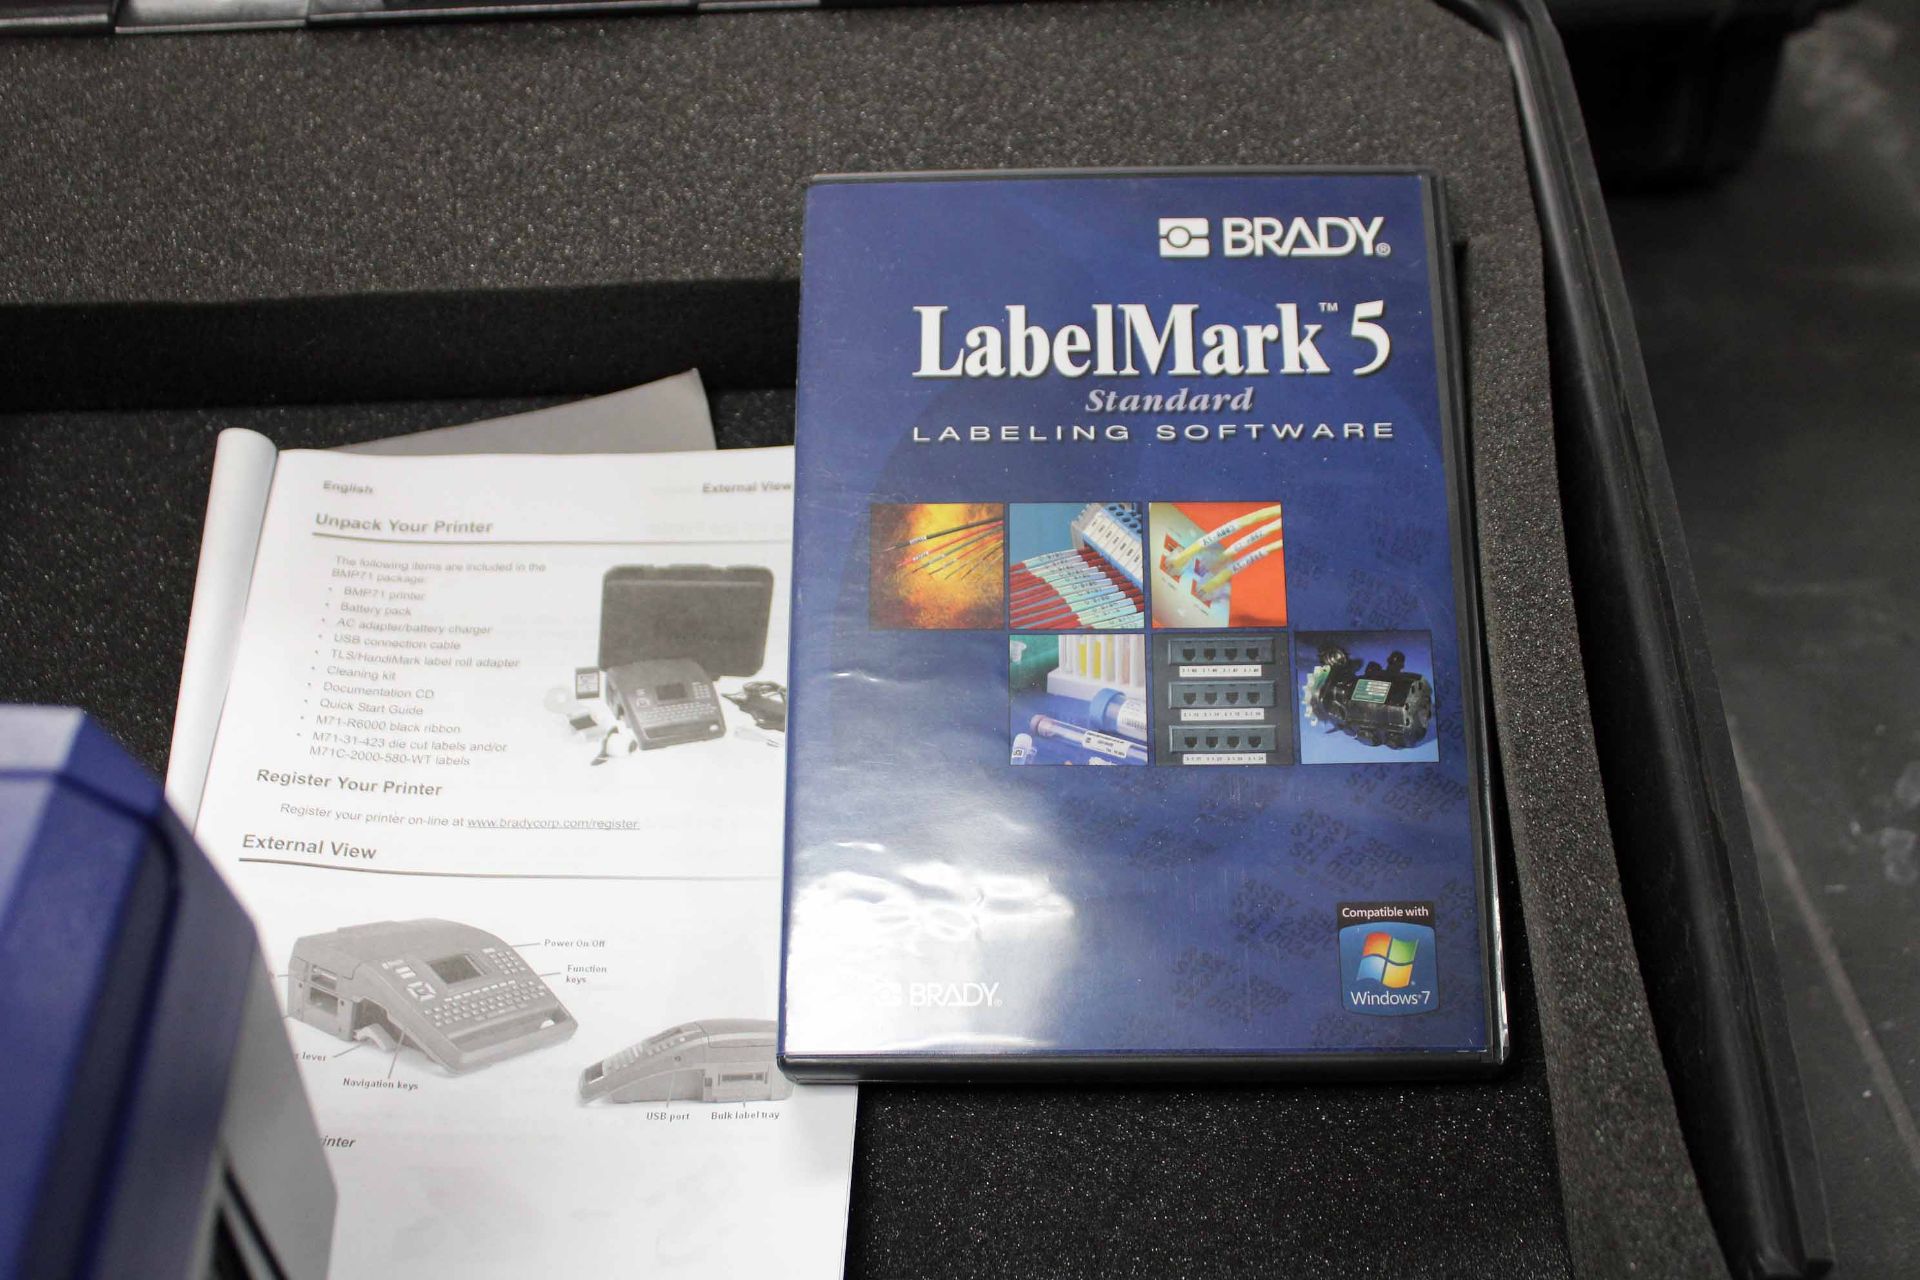 LABEL MAKER, BRADY MDL. BMP71, w/Labelmark 5 software & case - Image 2 of 2